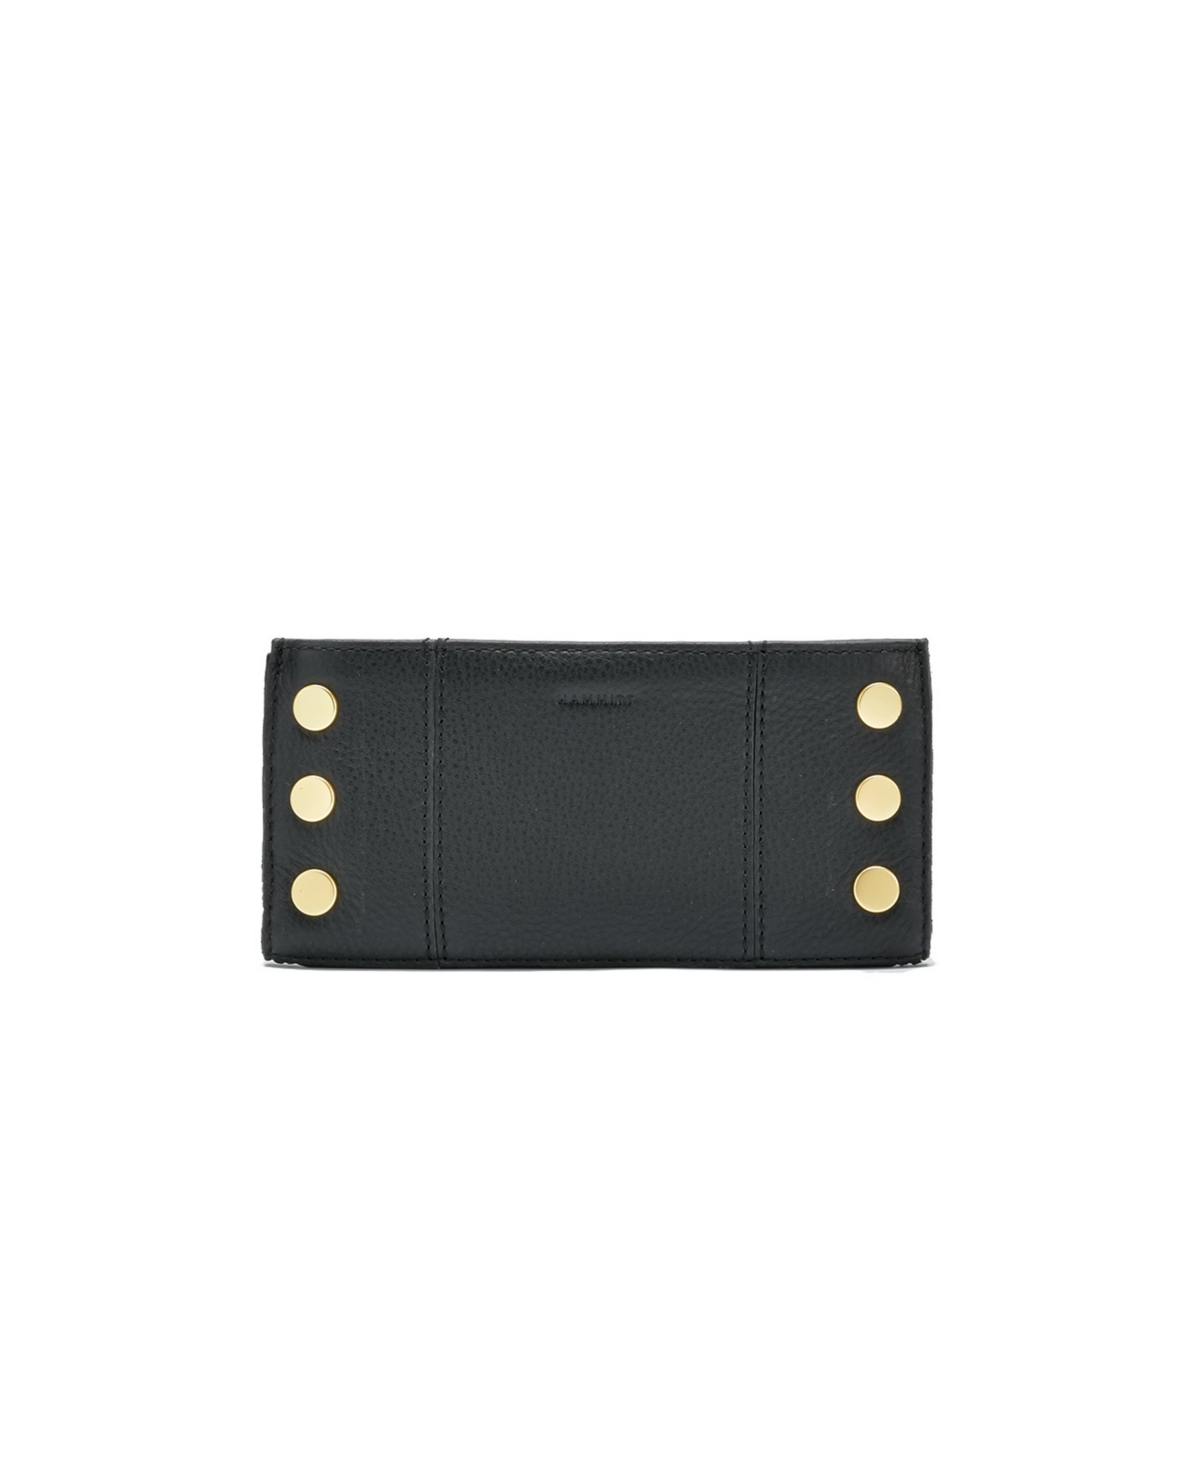 110 North Leather Wallet - Black Brushed Gold